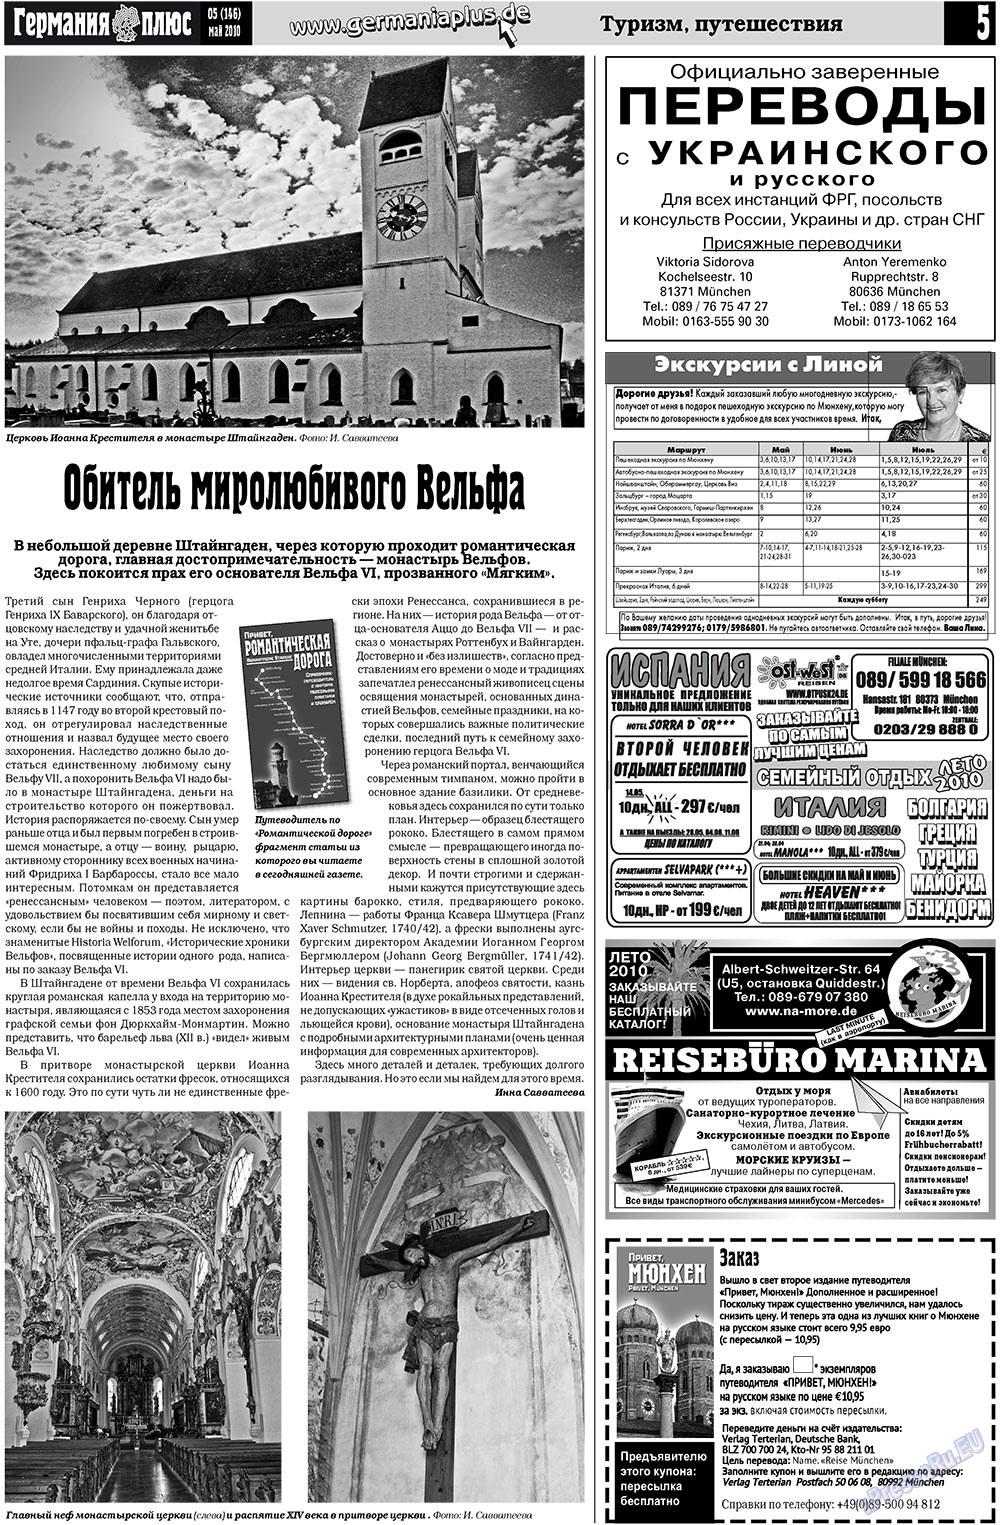 Германия плюс, газета. 2010 №5 стр.5